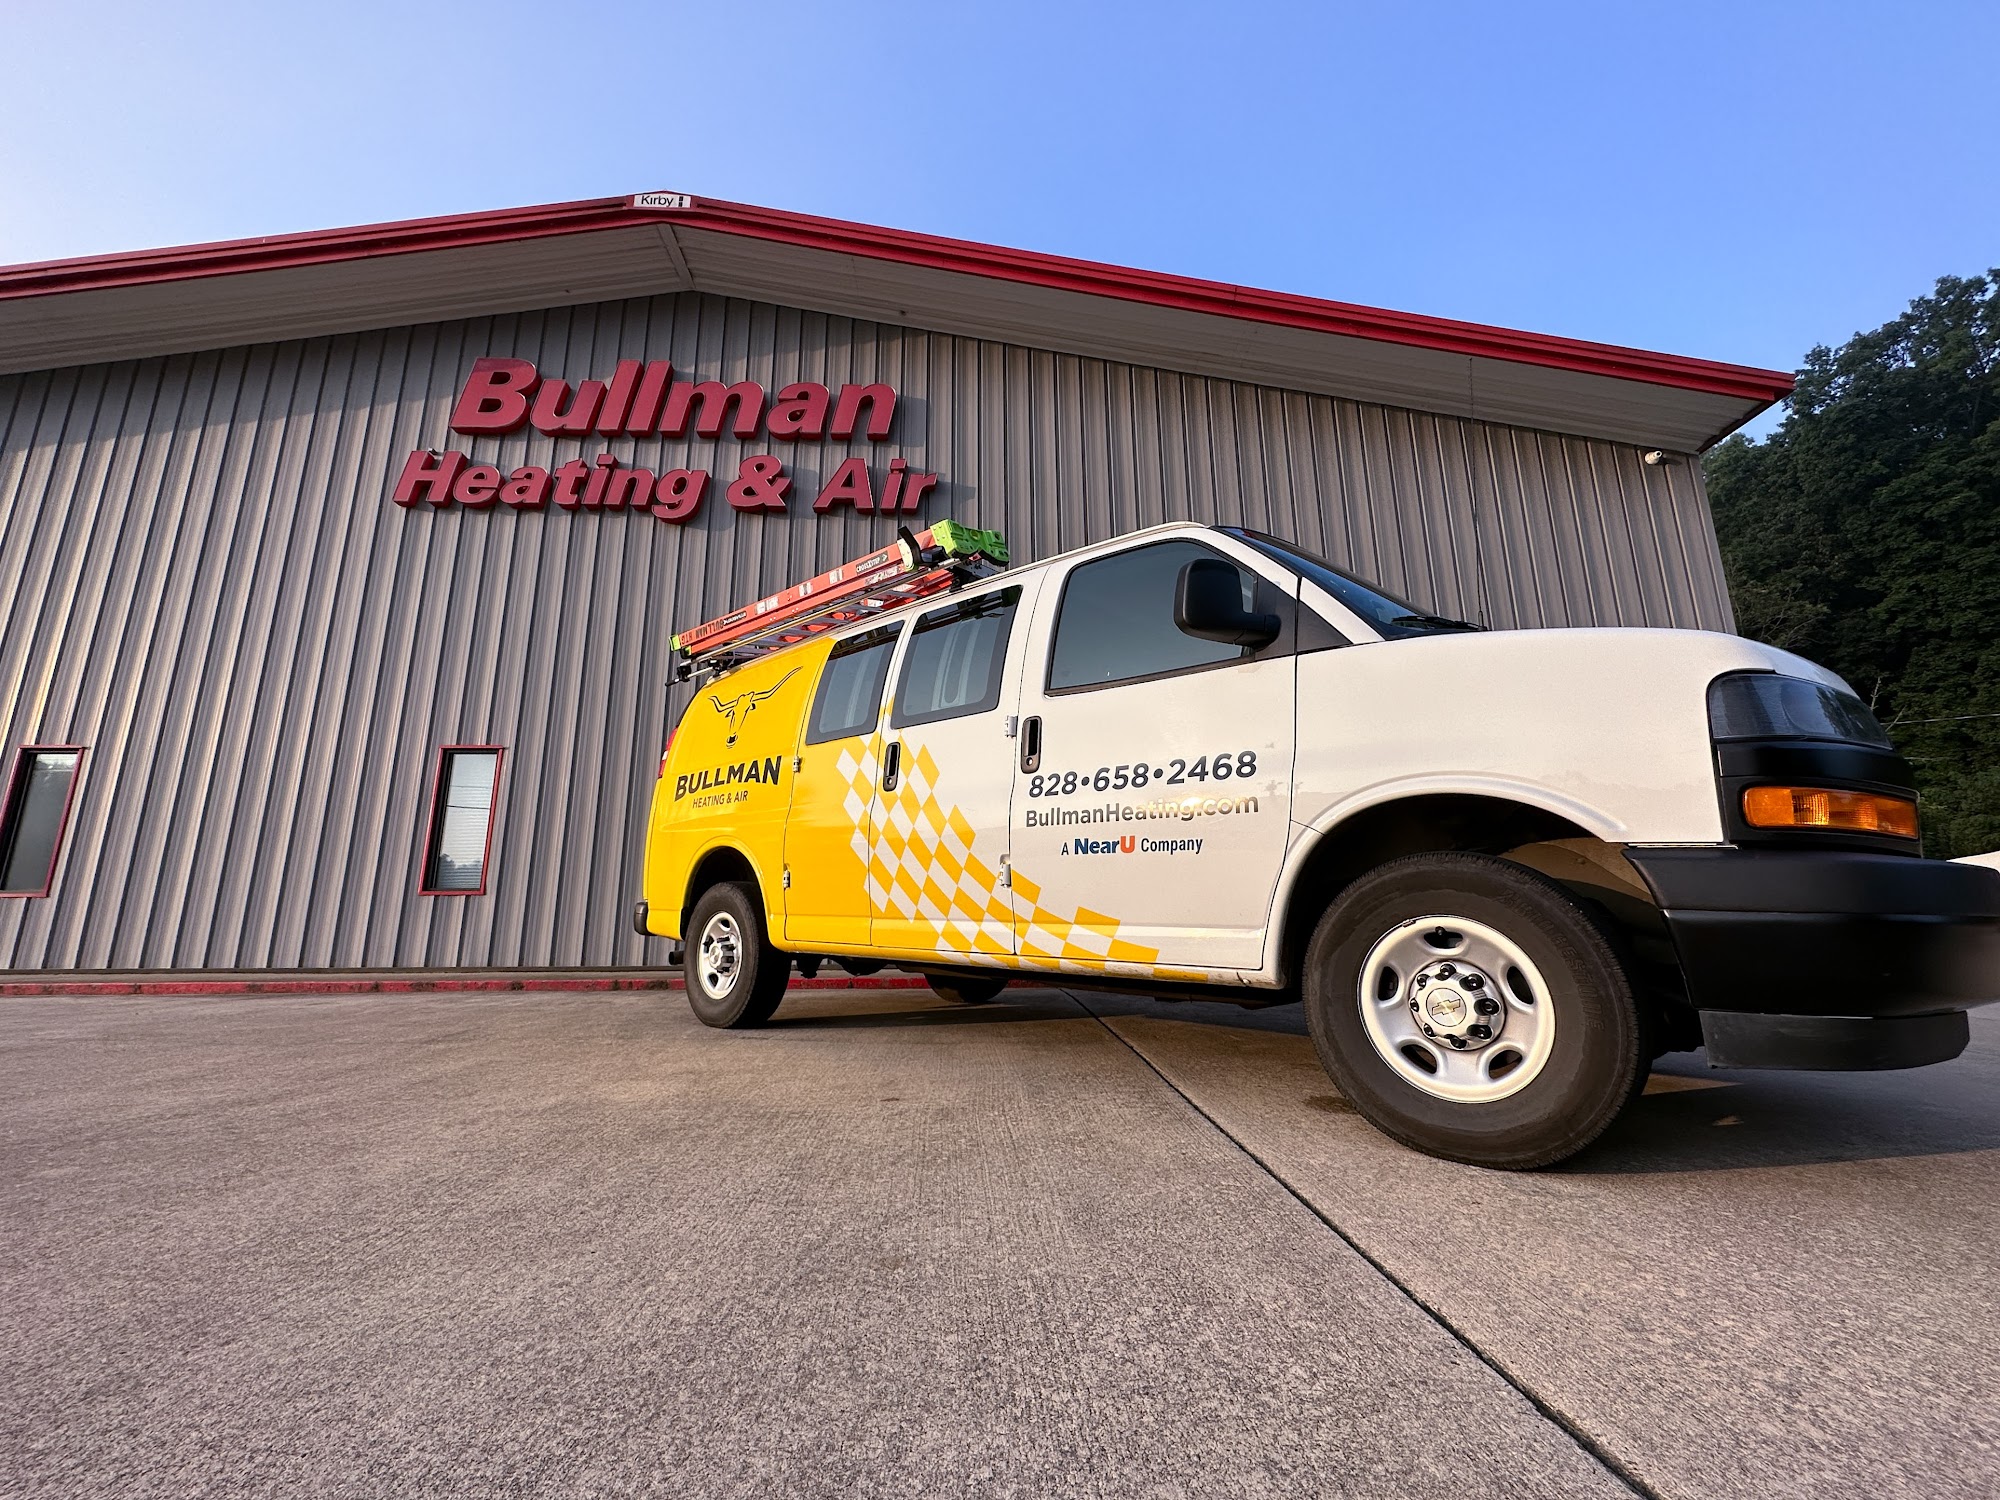 Bullman Heating & Air Inc